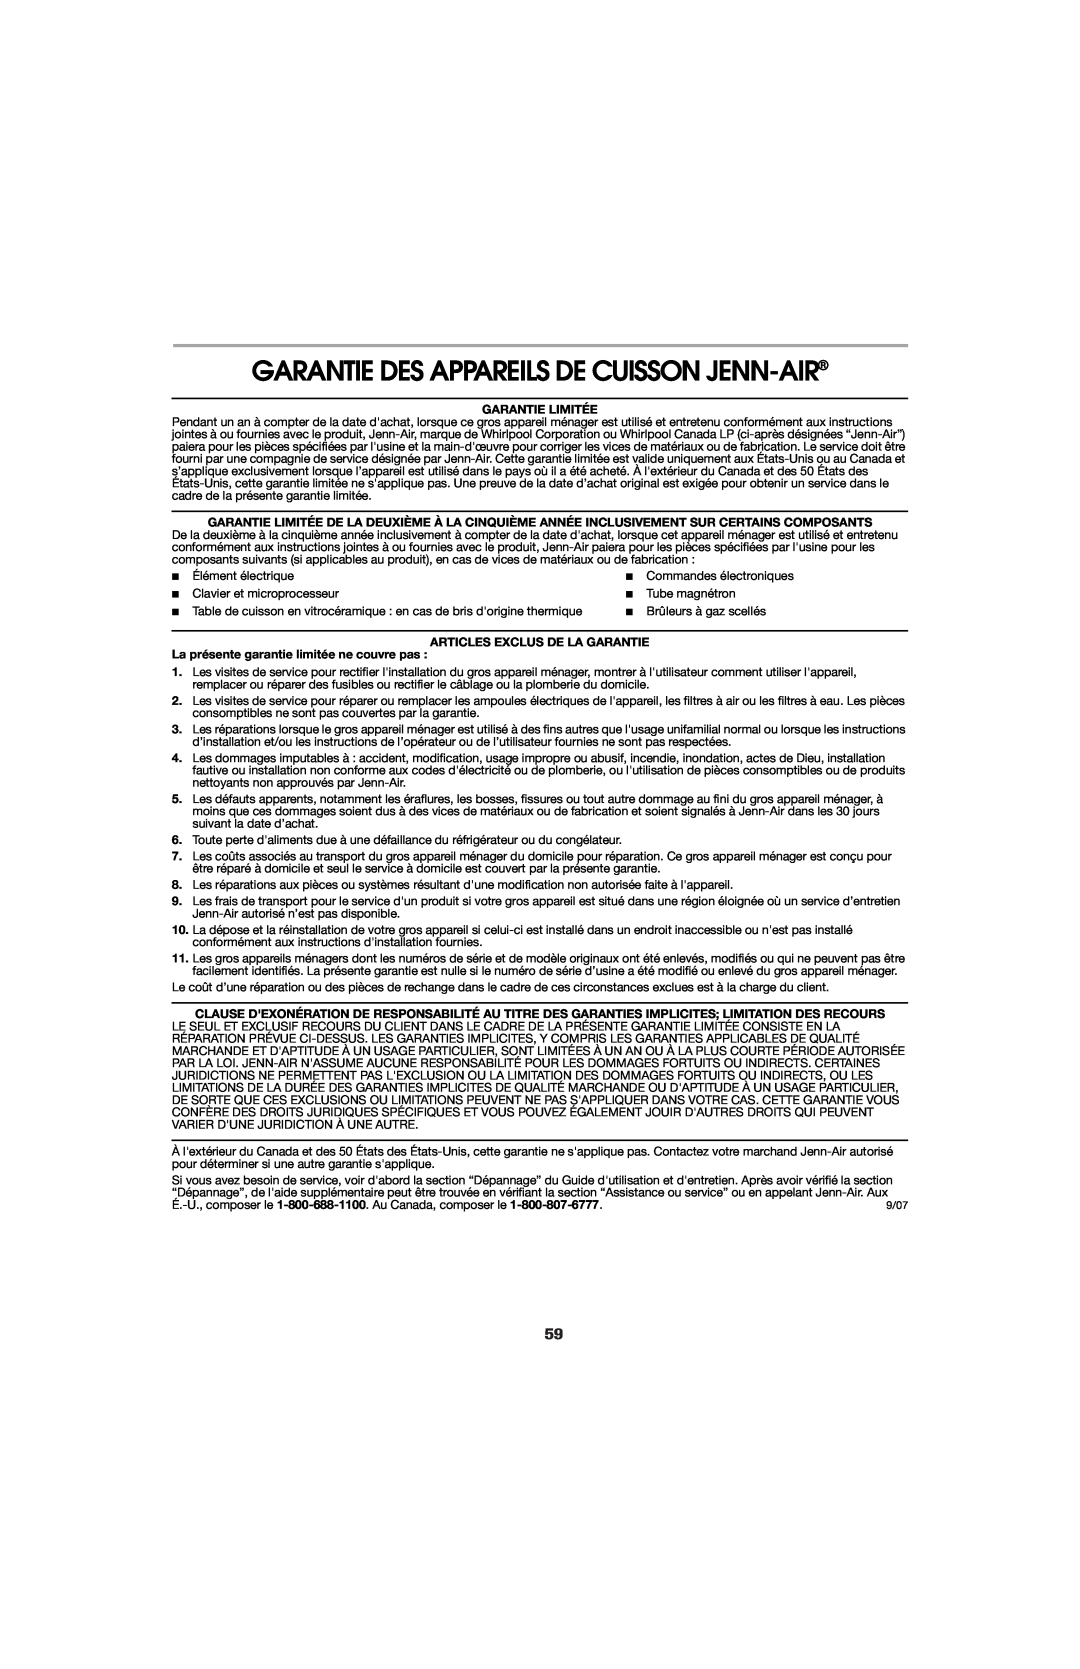 Jenn-Air 8113P759-60 Garantie Des Appareils De Cuisson Jenn-Air, Garantie Limitée, Articles Exclus De La Garantie 